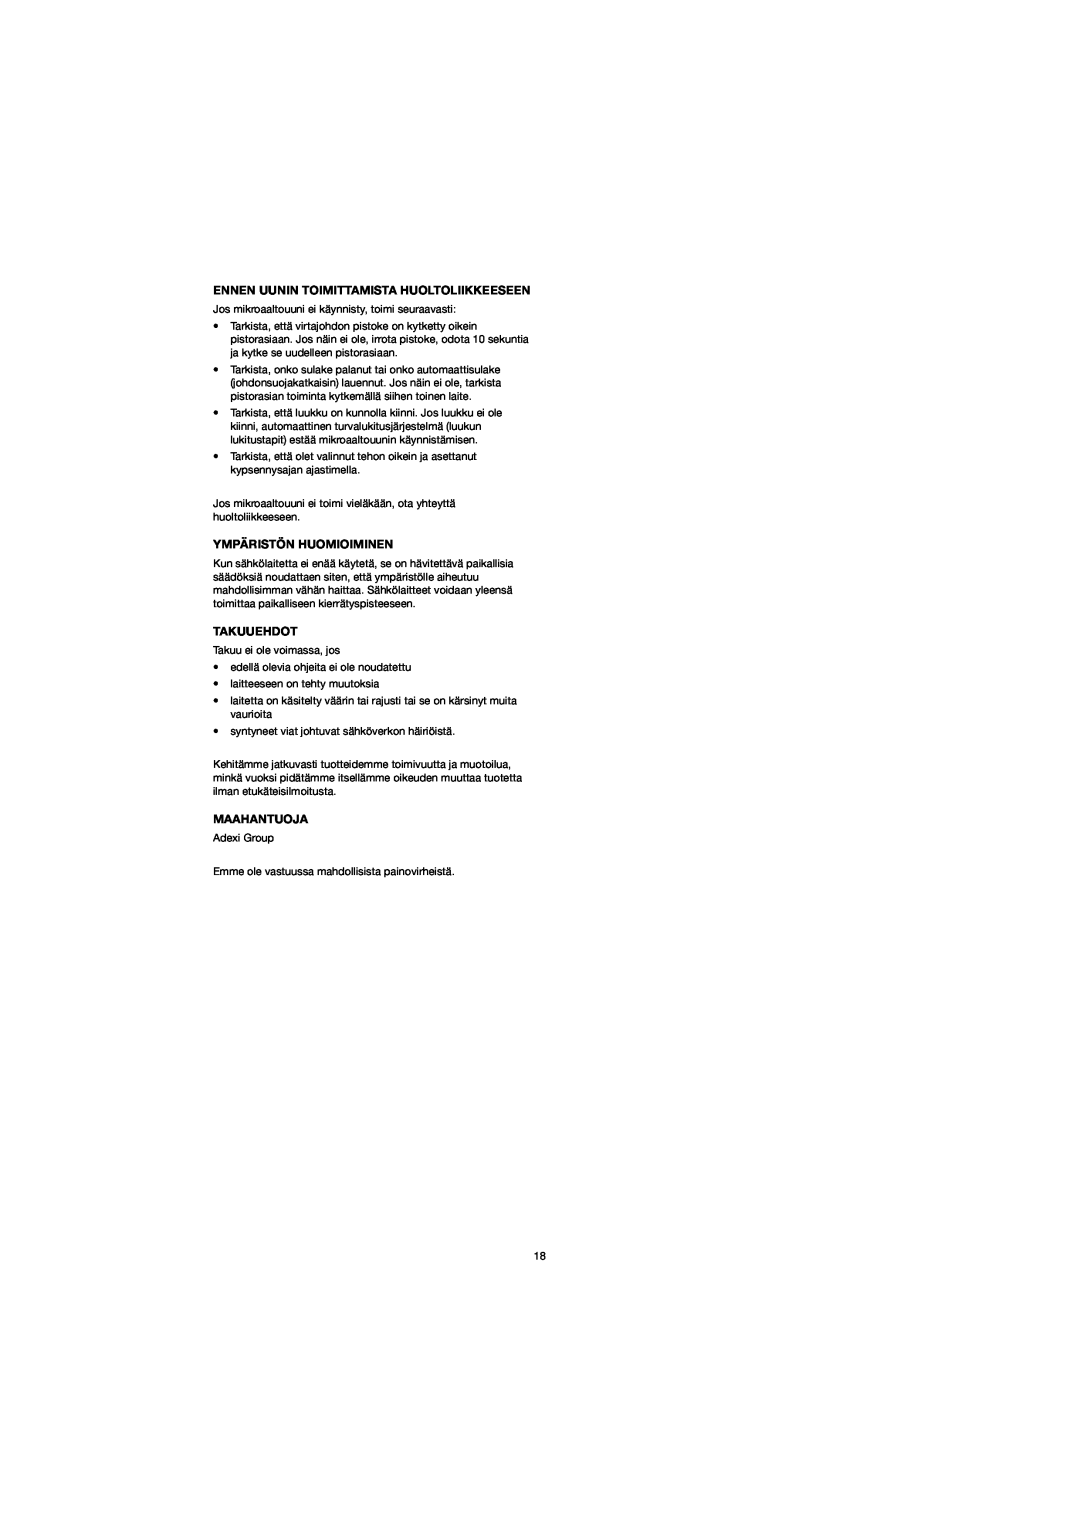 Melissa 753-094 manual Ennen Uunin Toimittamista Huoltoliikkeeseen, Ympäristön Huomioiminen, Takuuehdot, Maahantuoja 